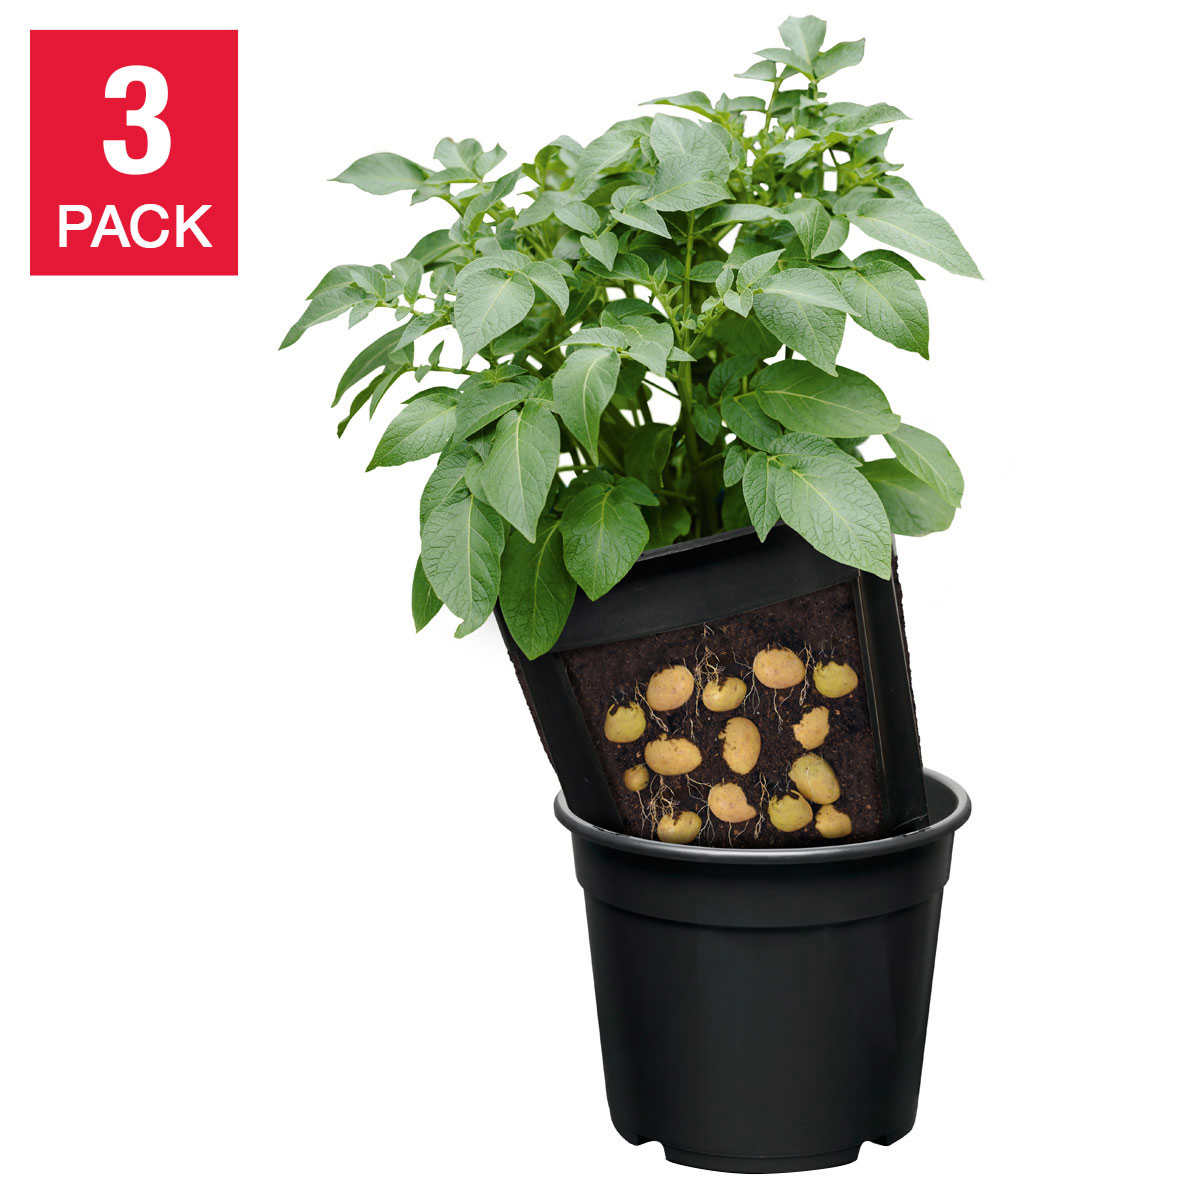 No Dig Potato Planter 3 Pack Costco